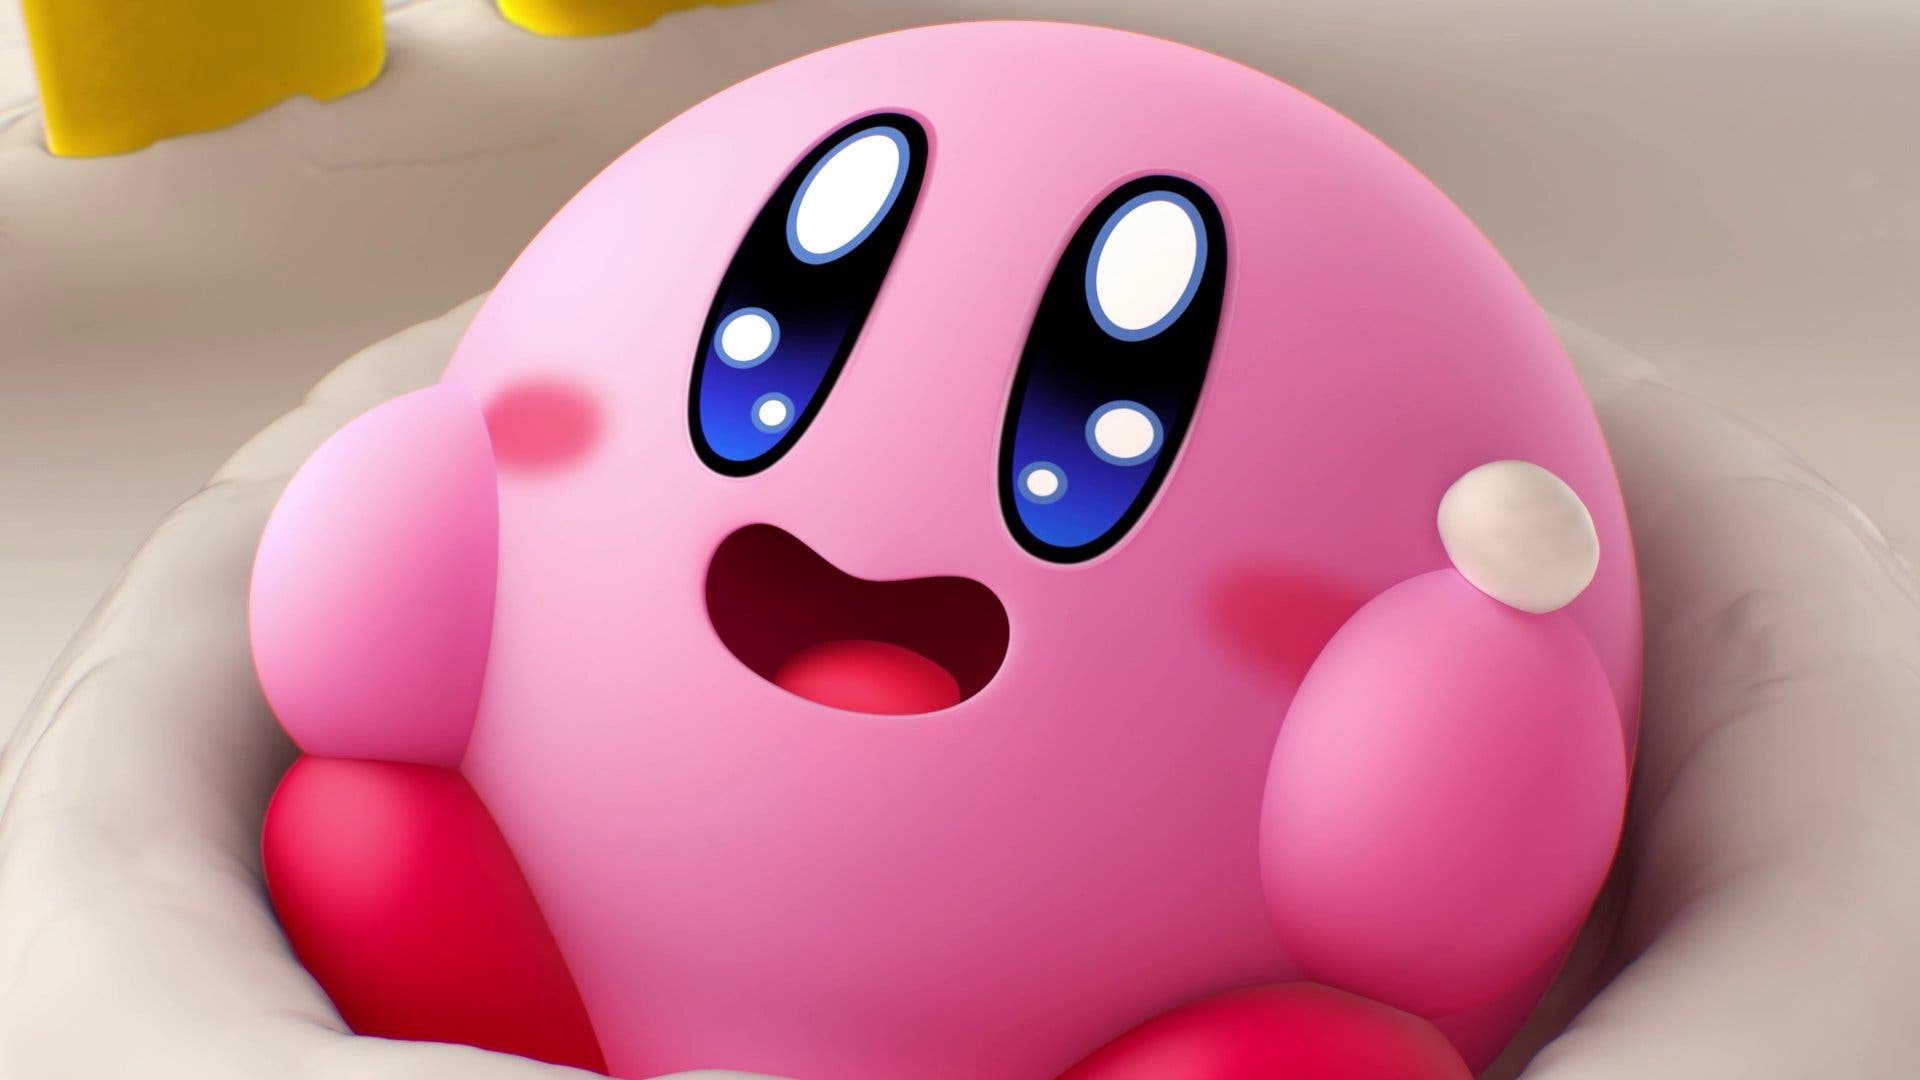 Nintendo Switch Online recibe estos nuevos iconos de Kirby’s Dream Buffet